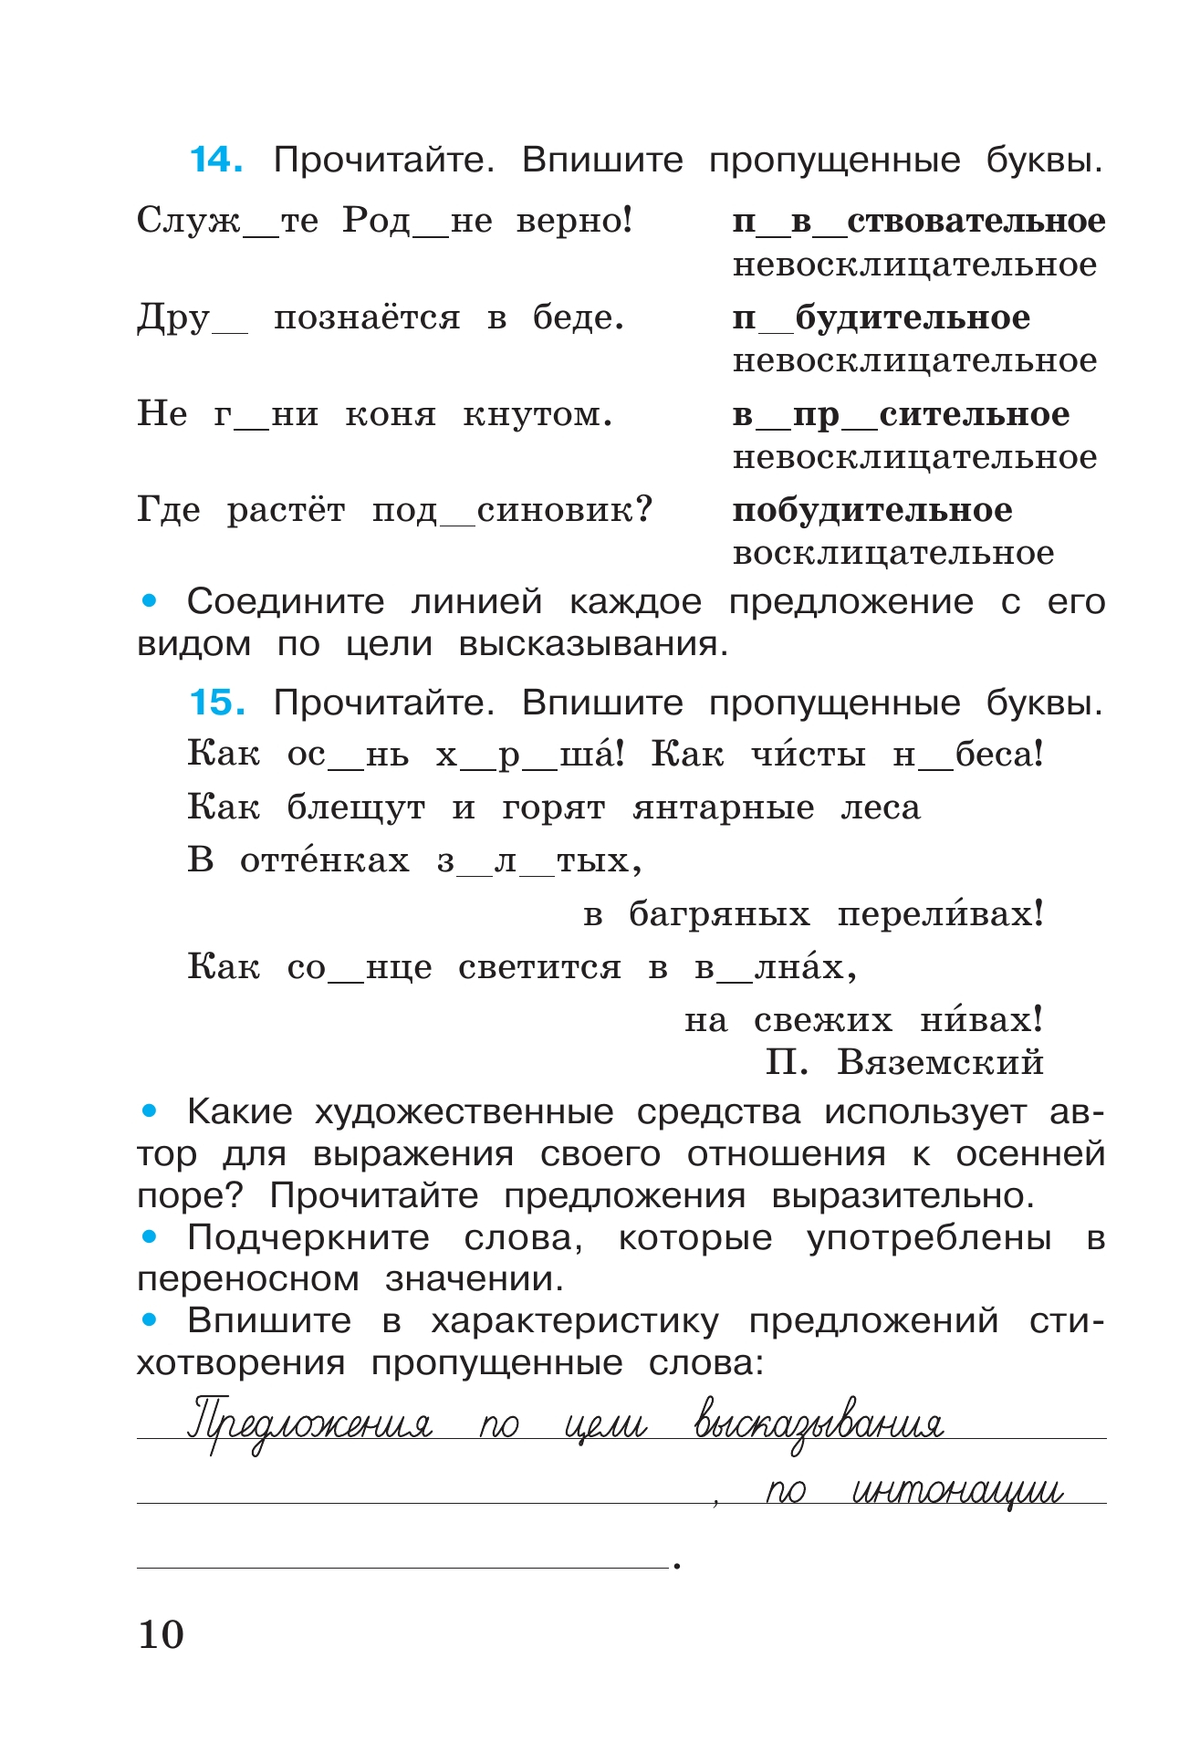 Русский язык. Рабочая тетрадь. 4 класс. В 2-х ч. Ч. 1 6